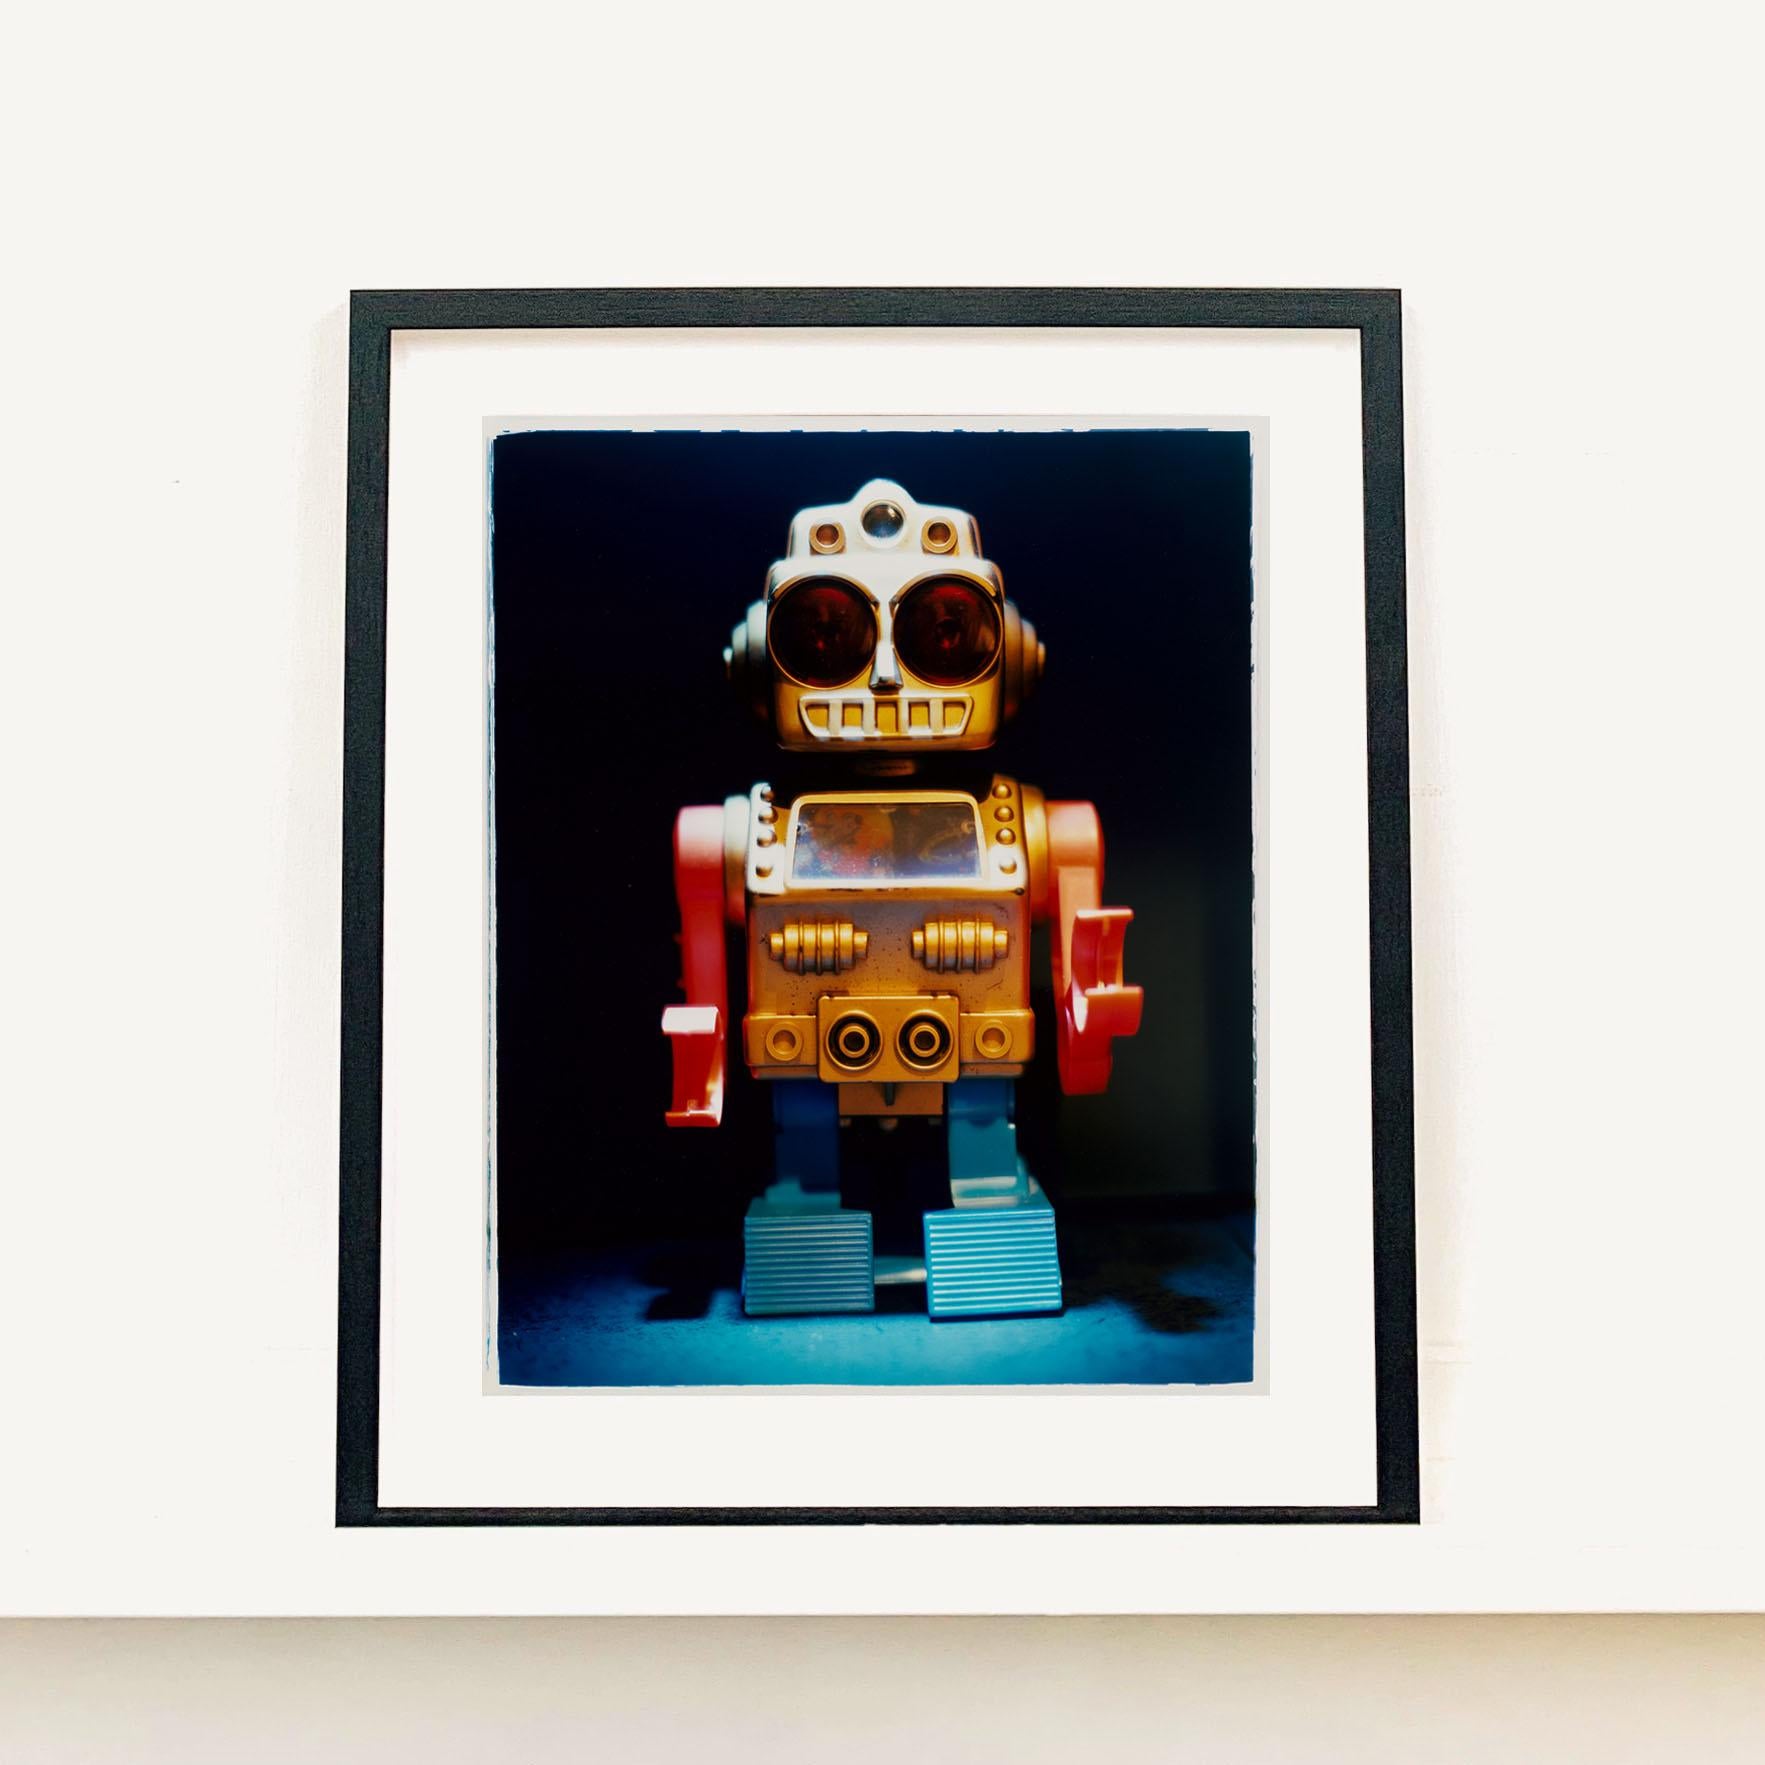 Dark Bot, Natasha Heidler donne vie aux jouets préférés des enfants dans ses photographies conceptuelles.

Cette œuvre d'art est une édition limitée à 25 exemplaires. Il s'agit d'un tirage photographique brillant, monté à sec sur de l'aluminium,